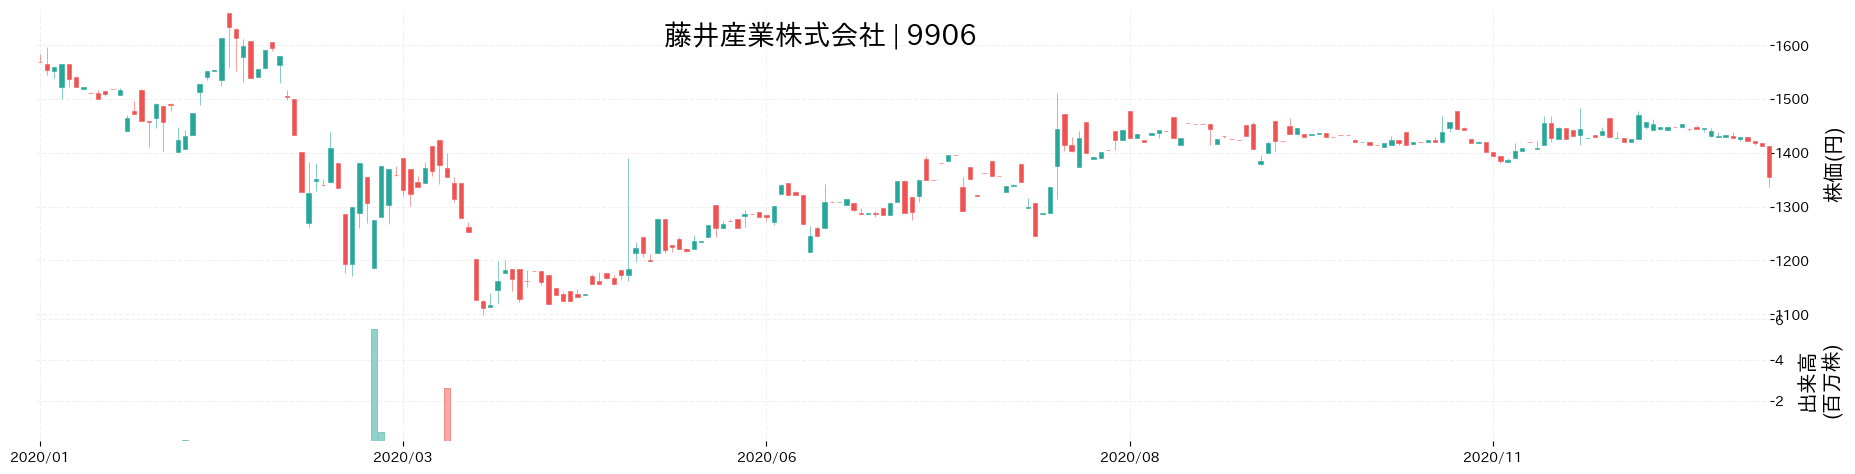 藤井産業の株価推移(2020)